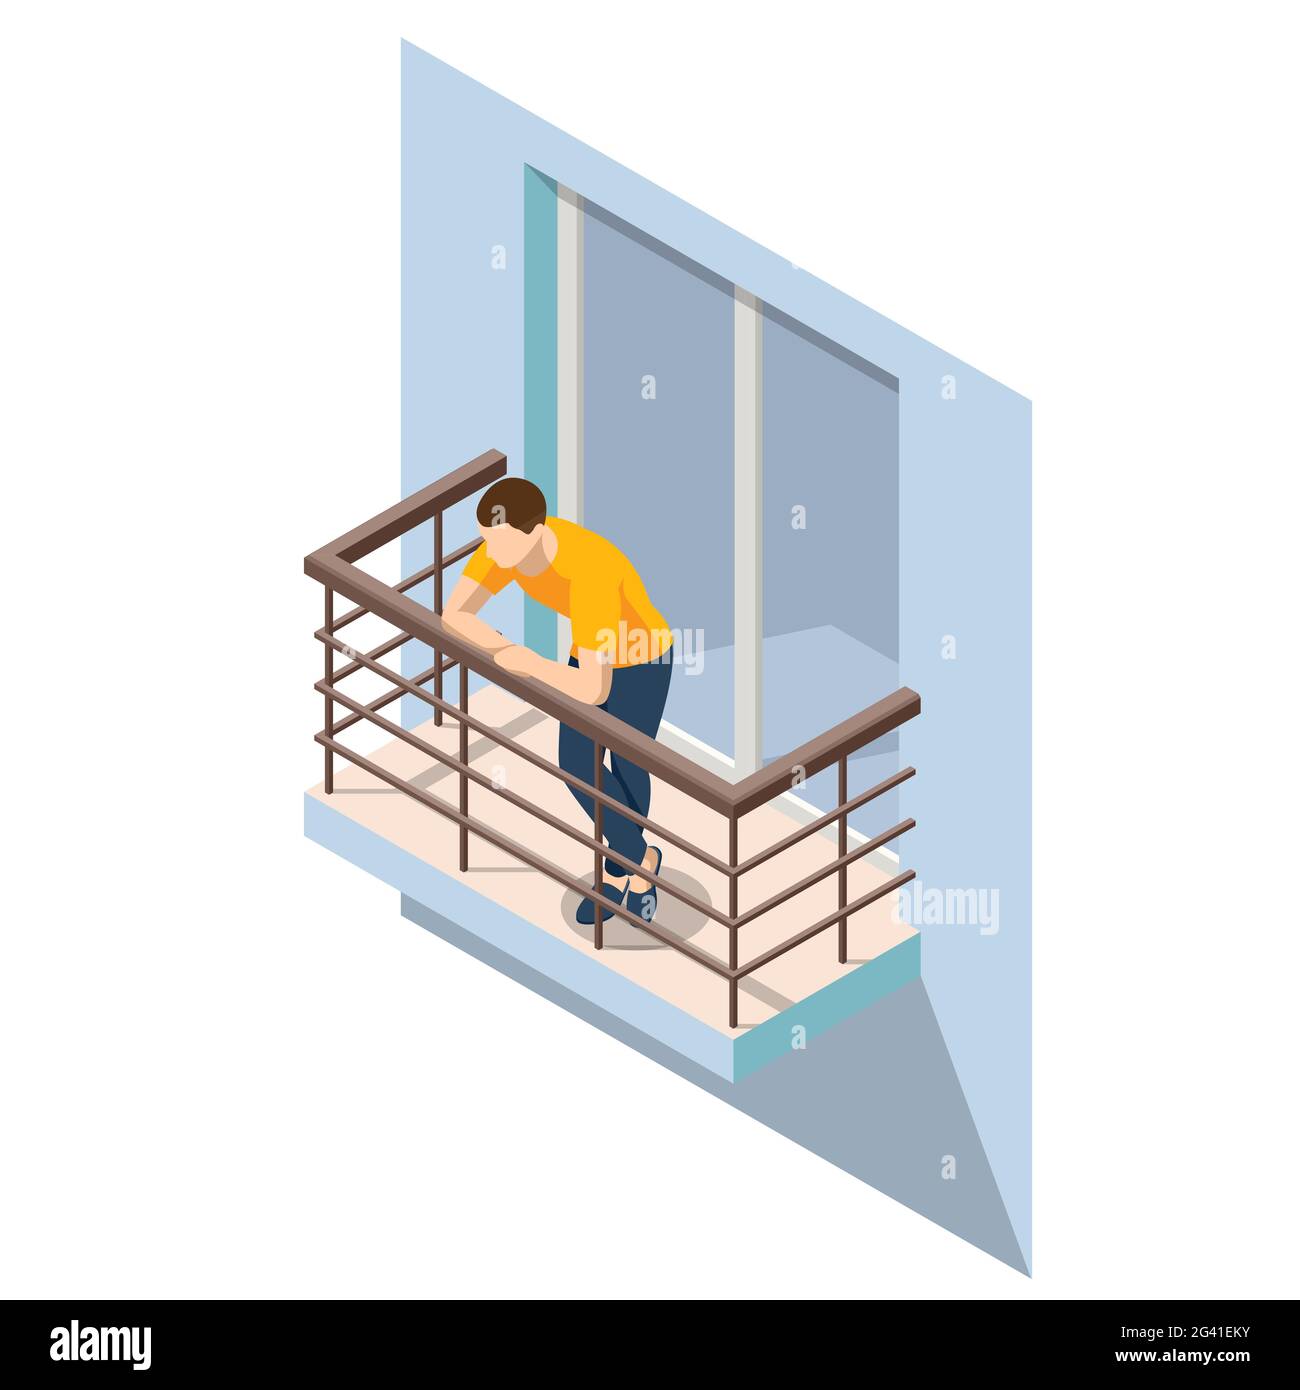 Isométriques Homme reposant sur un balcon ouvert en été. Balcon extérieur ouvert avec rambardes en métal argenté isolées sur l'arrière-plan. Illustration de Vecteur